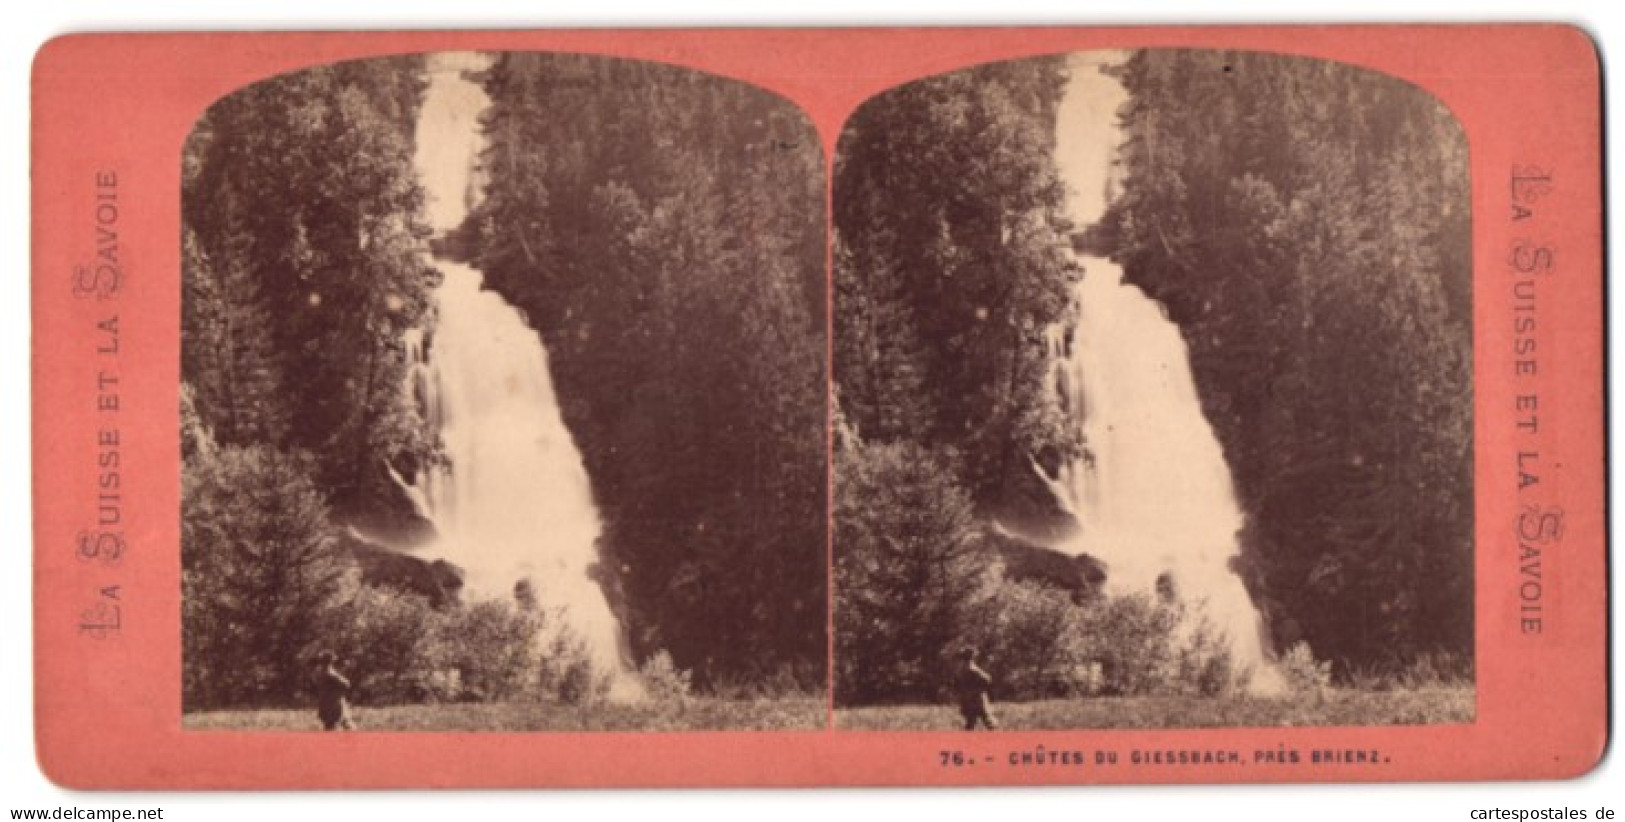 Stereo-Fotografie Unbekannter Fotograf, Ansicht Brienz, Blick Auf Den Giessbachfall, Wasserfall  - Stereo-Photographie